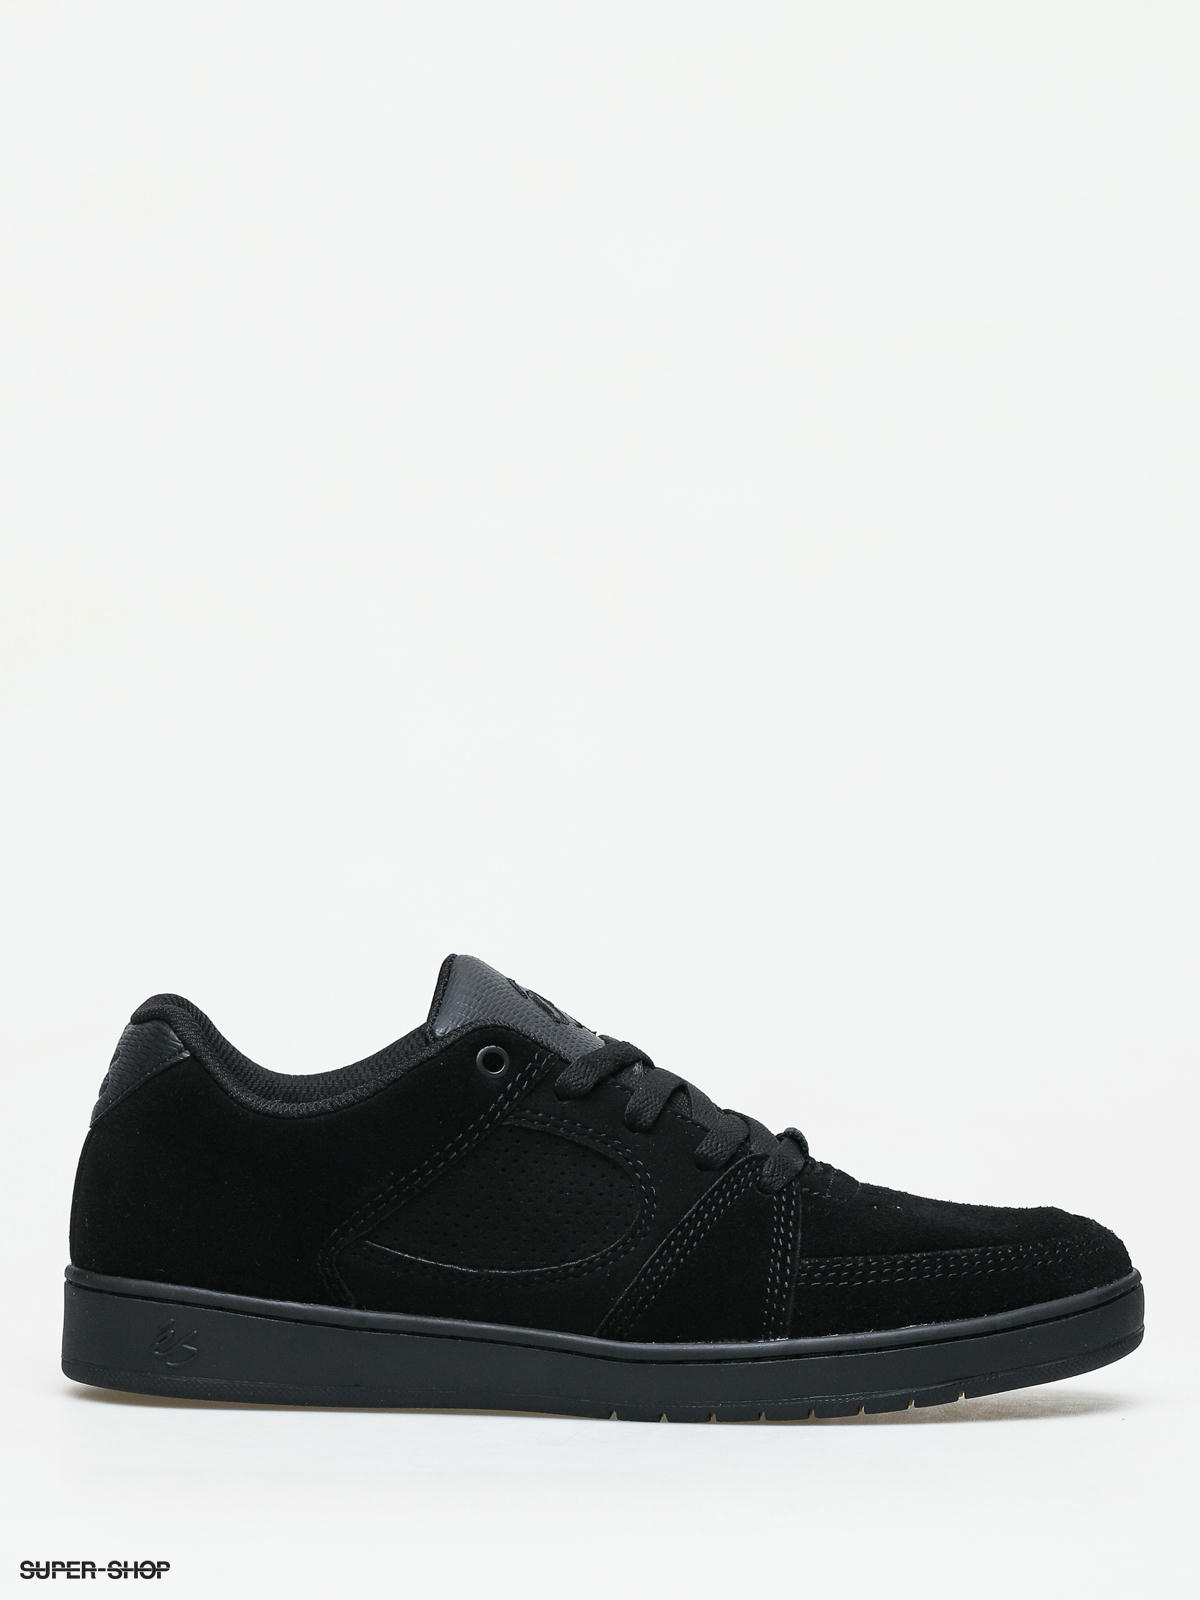 eS Accel Slim black white Sneaker Schuhe schwarz 